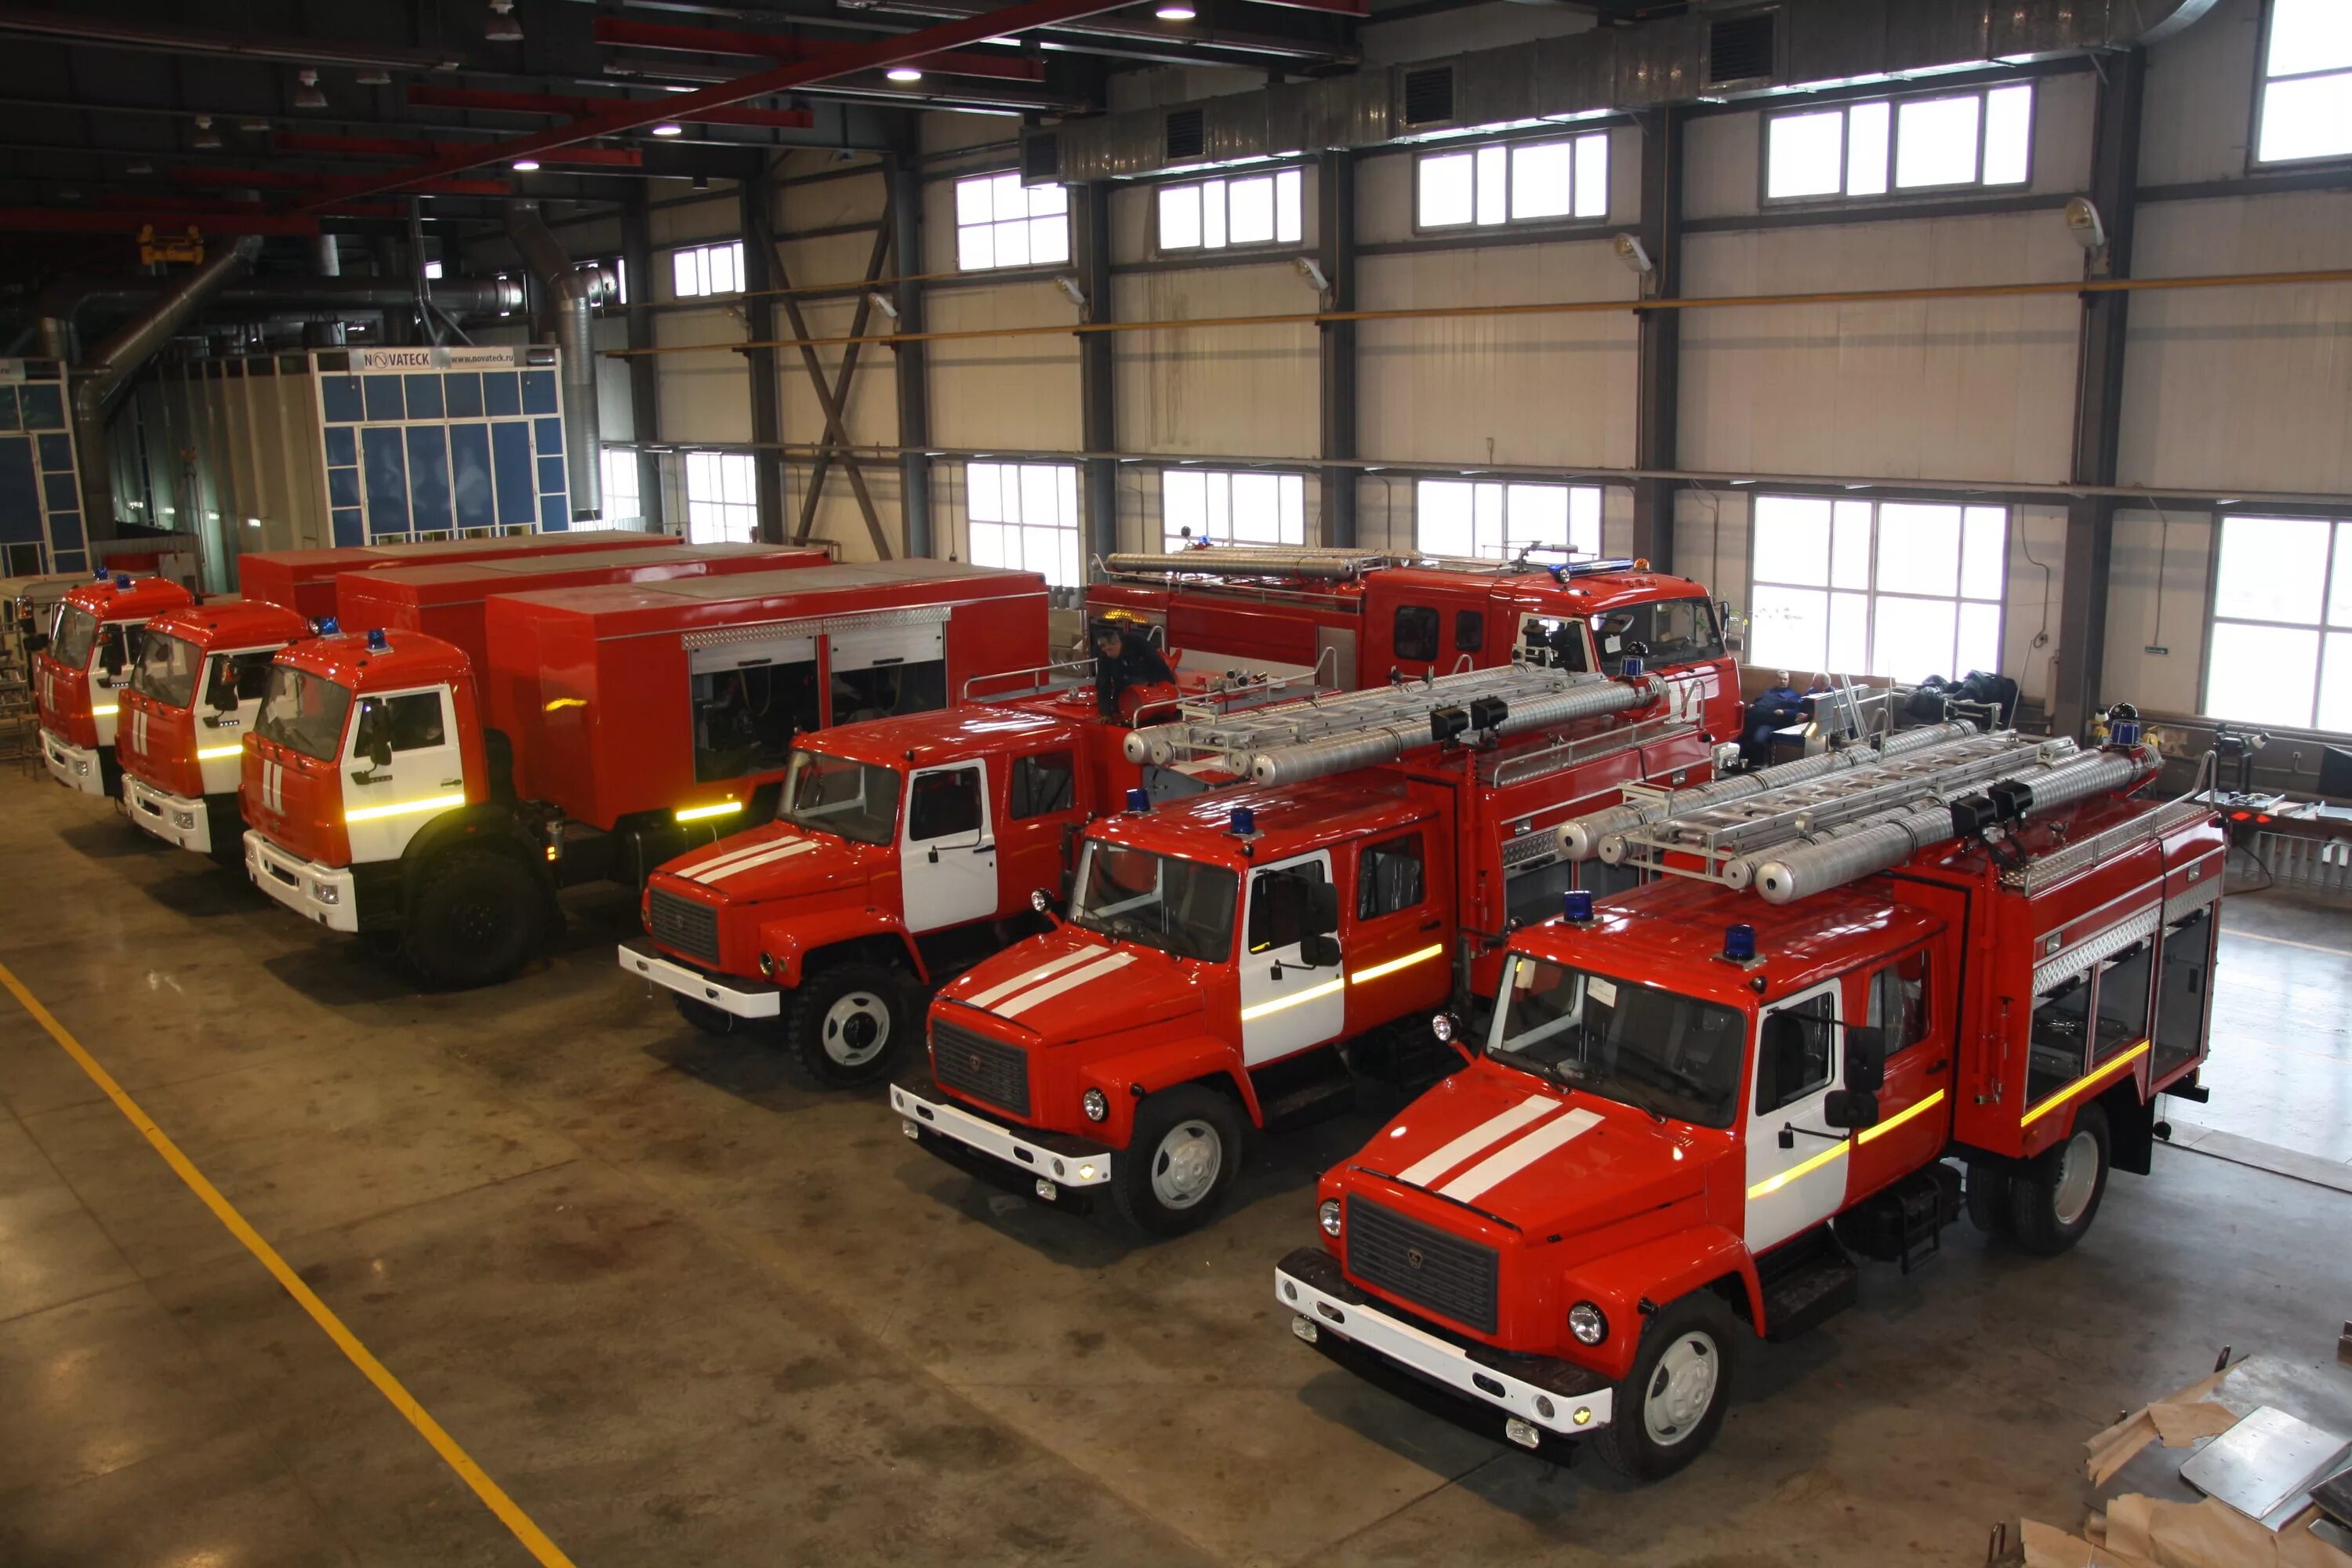 Хранение пожарных автомобилей